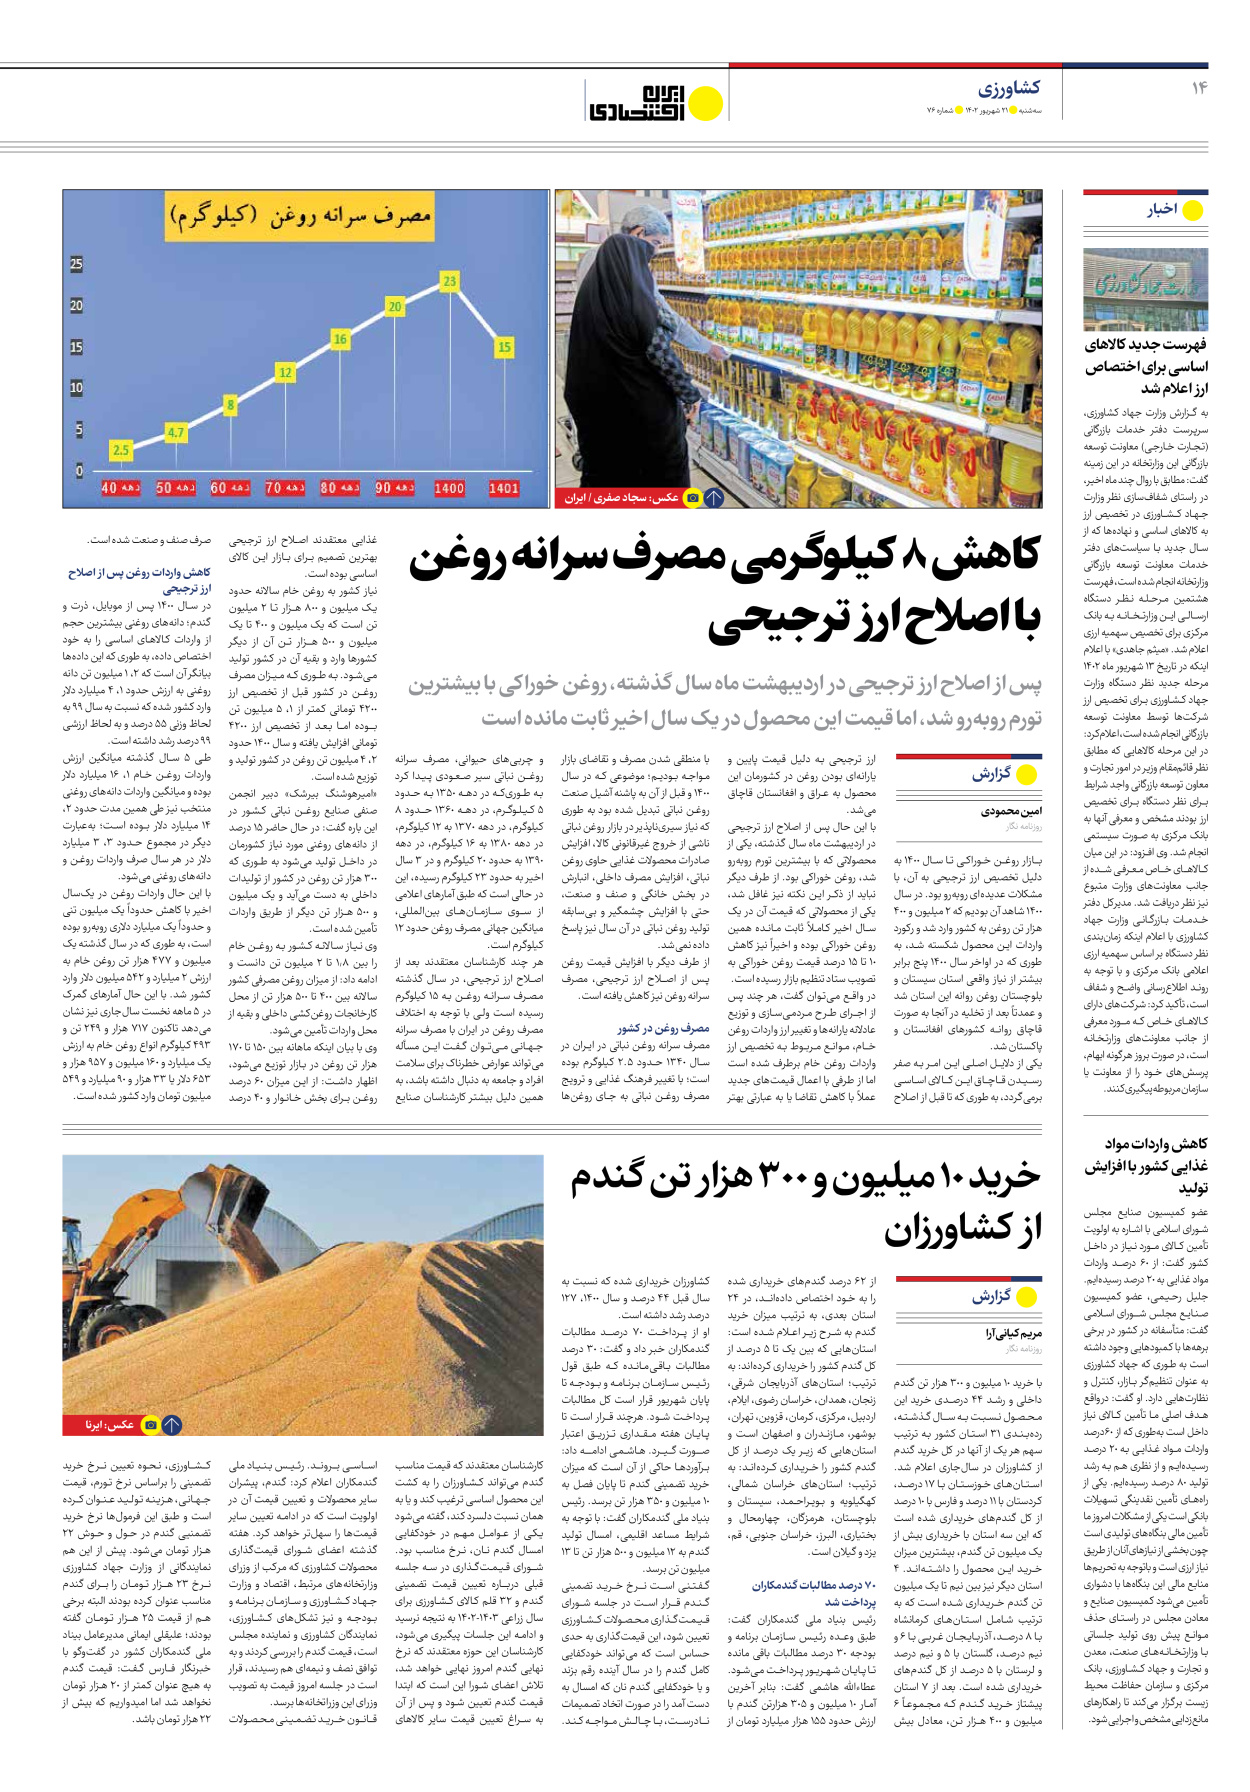 روزنامه ایران اقتصادی - شماره هفتاد و شش - ۲۱ شهریور ۱۴۰۲ - صفحه ۱۴